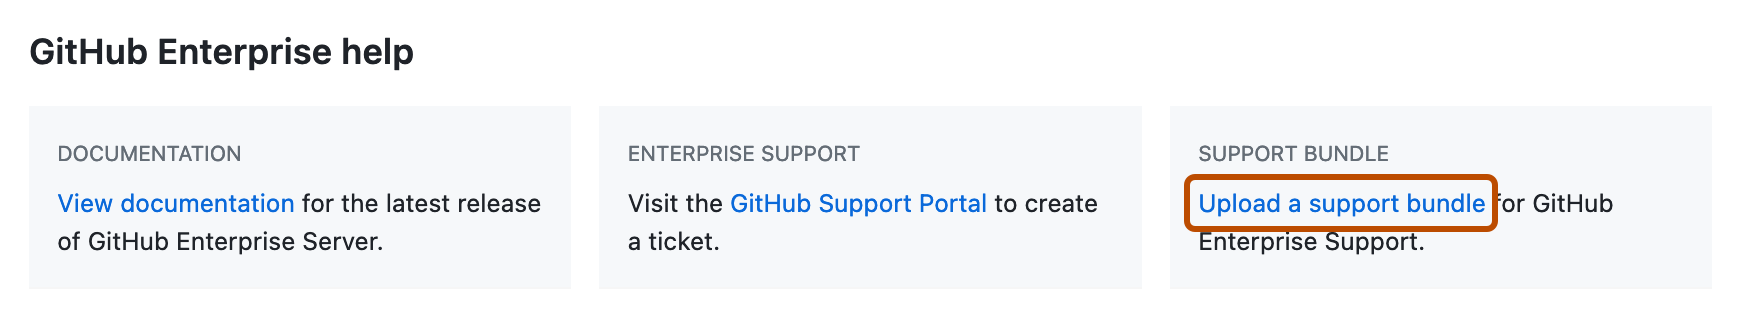 Capture d’écran de la section « Aide sur GitHub Enterprise » de la page des paramètres d’entreprise. Le lien « Charger un bundle de support » est mis en évidence avec un rectangle orange foncé.